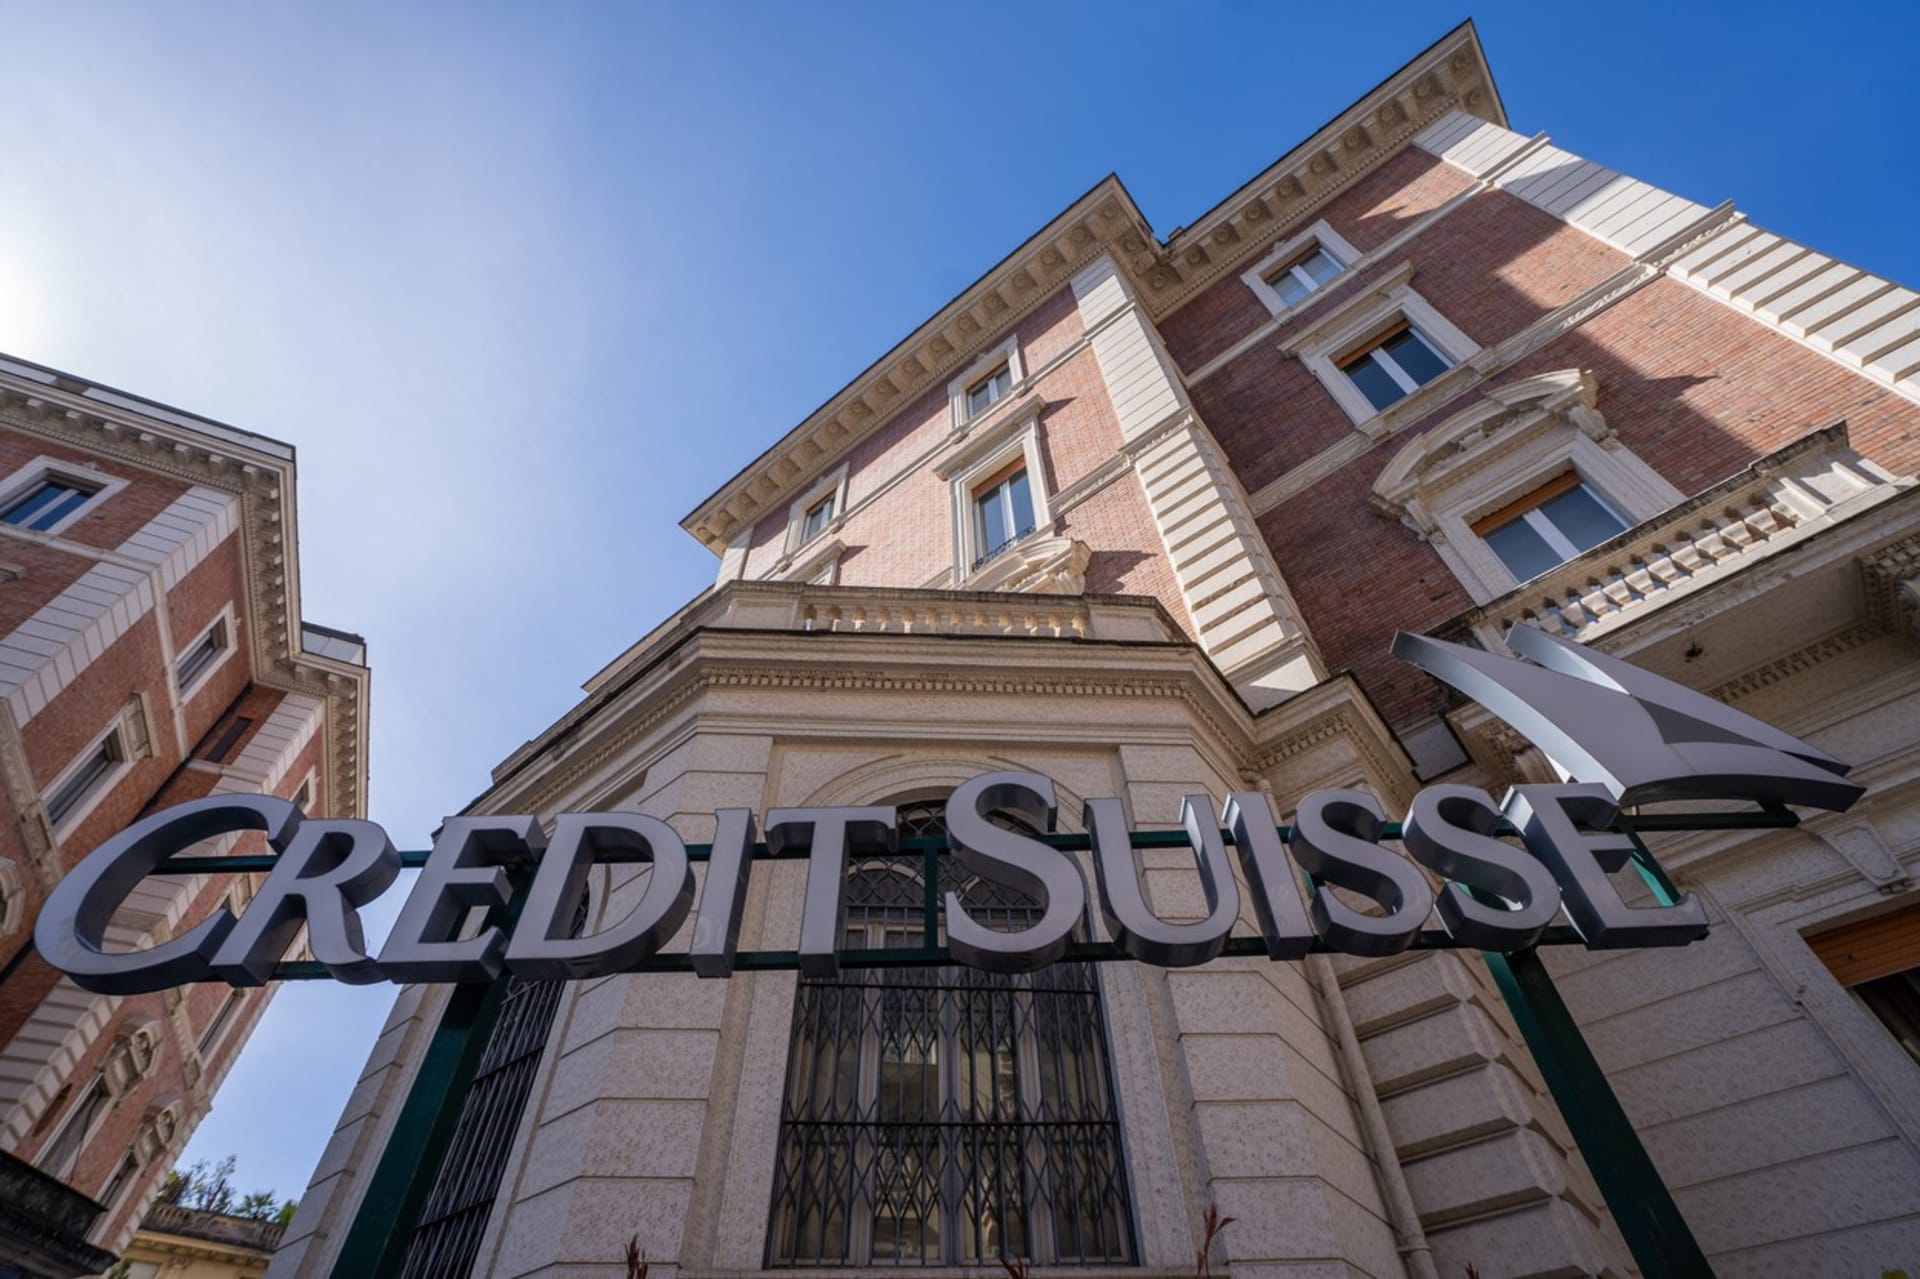 Pobočka Credit Suisse v Římě